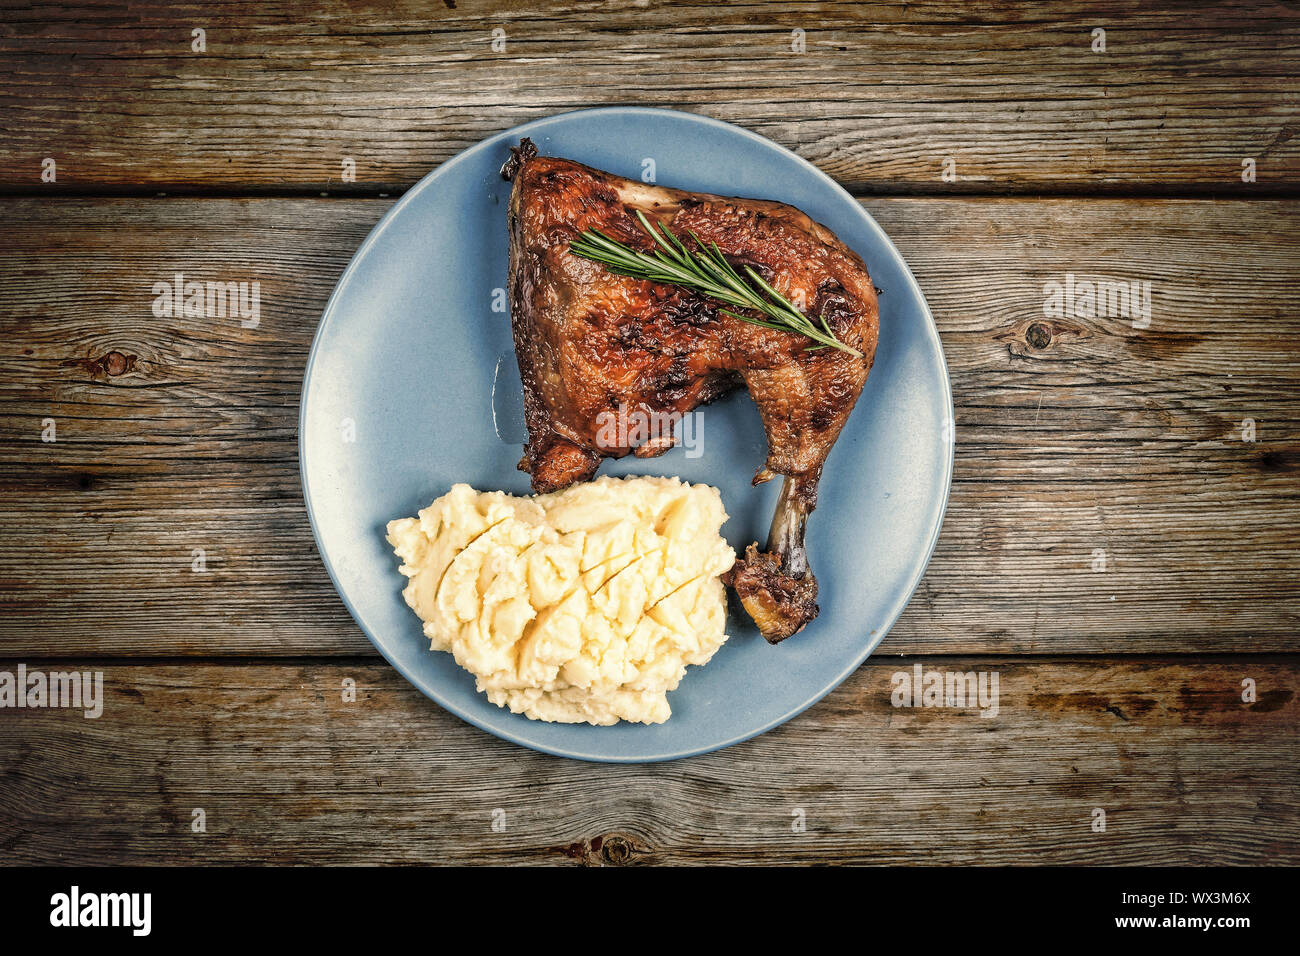 Almuerzo, piernas de pollo, pollo frito, vista superior, espacio de copia Foto de stock